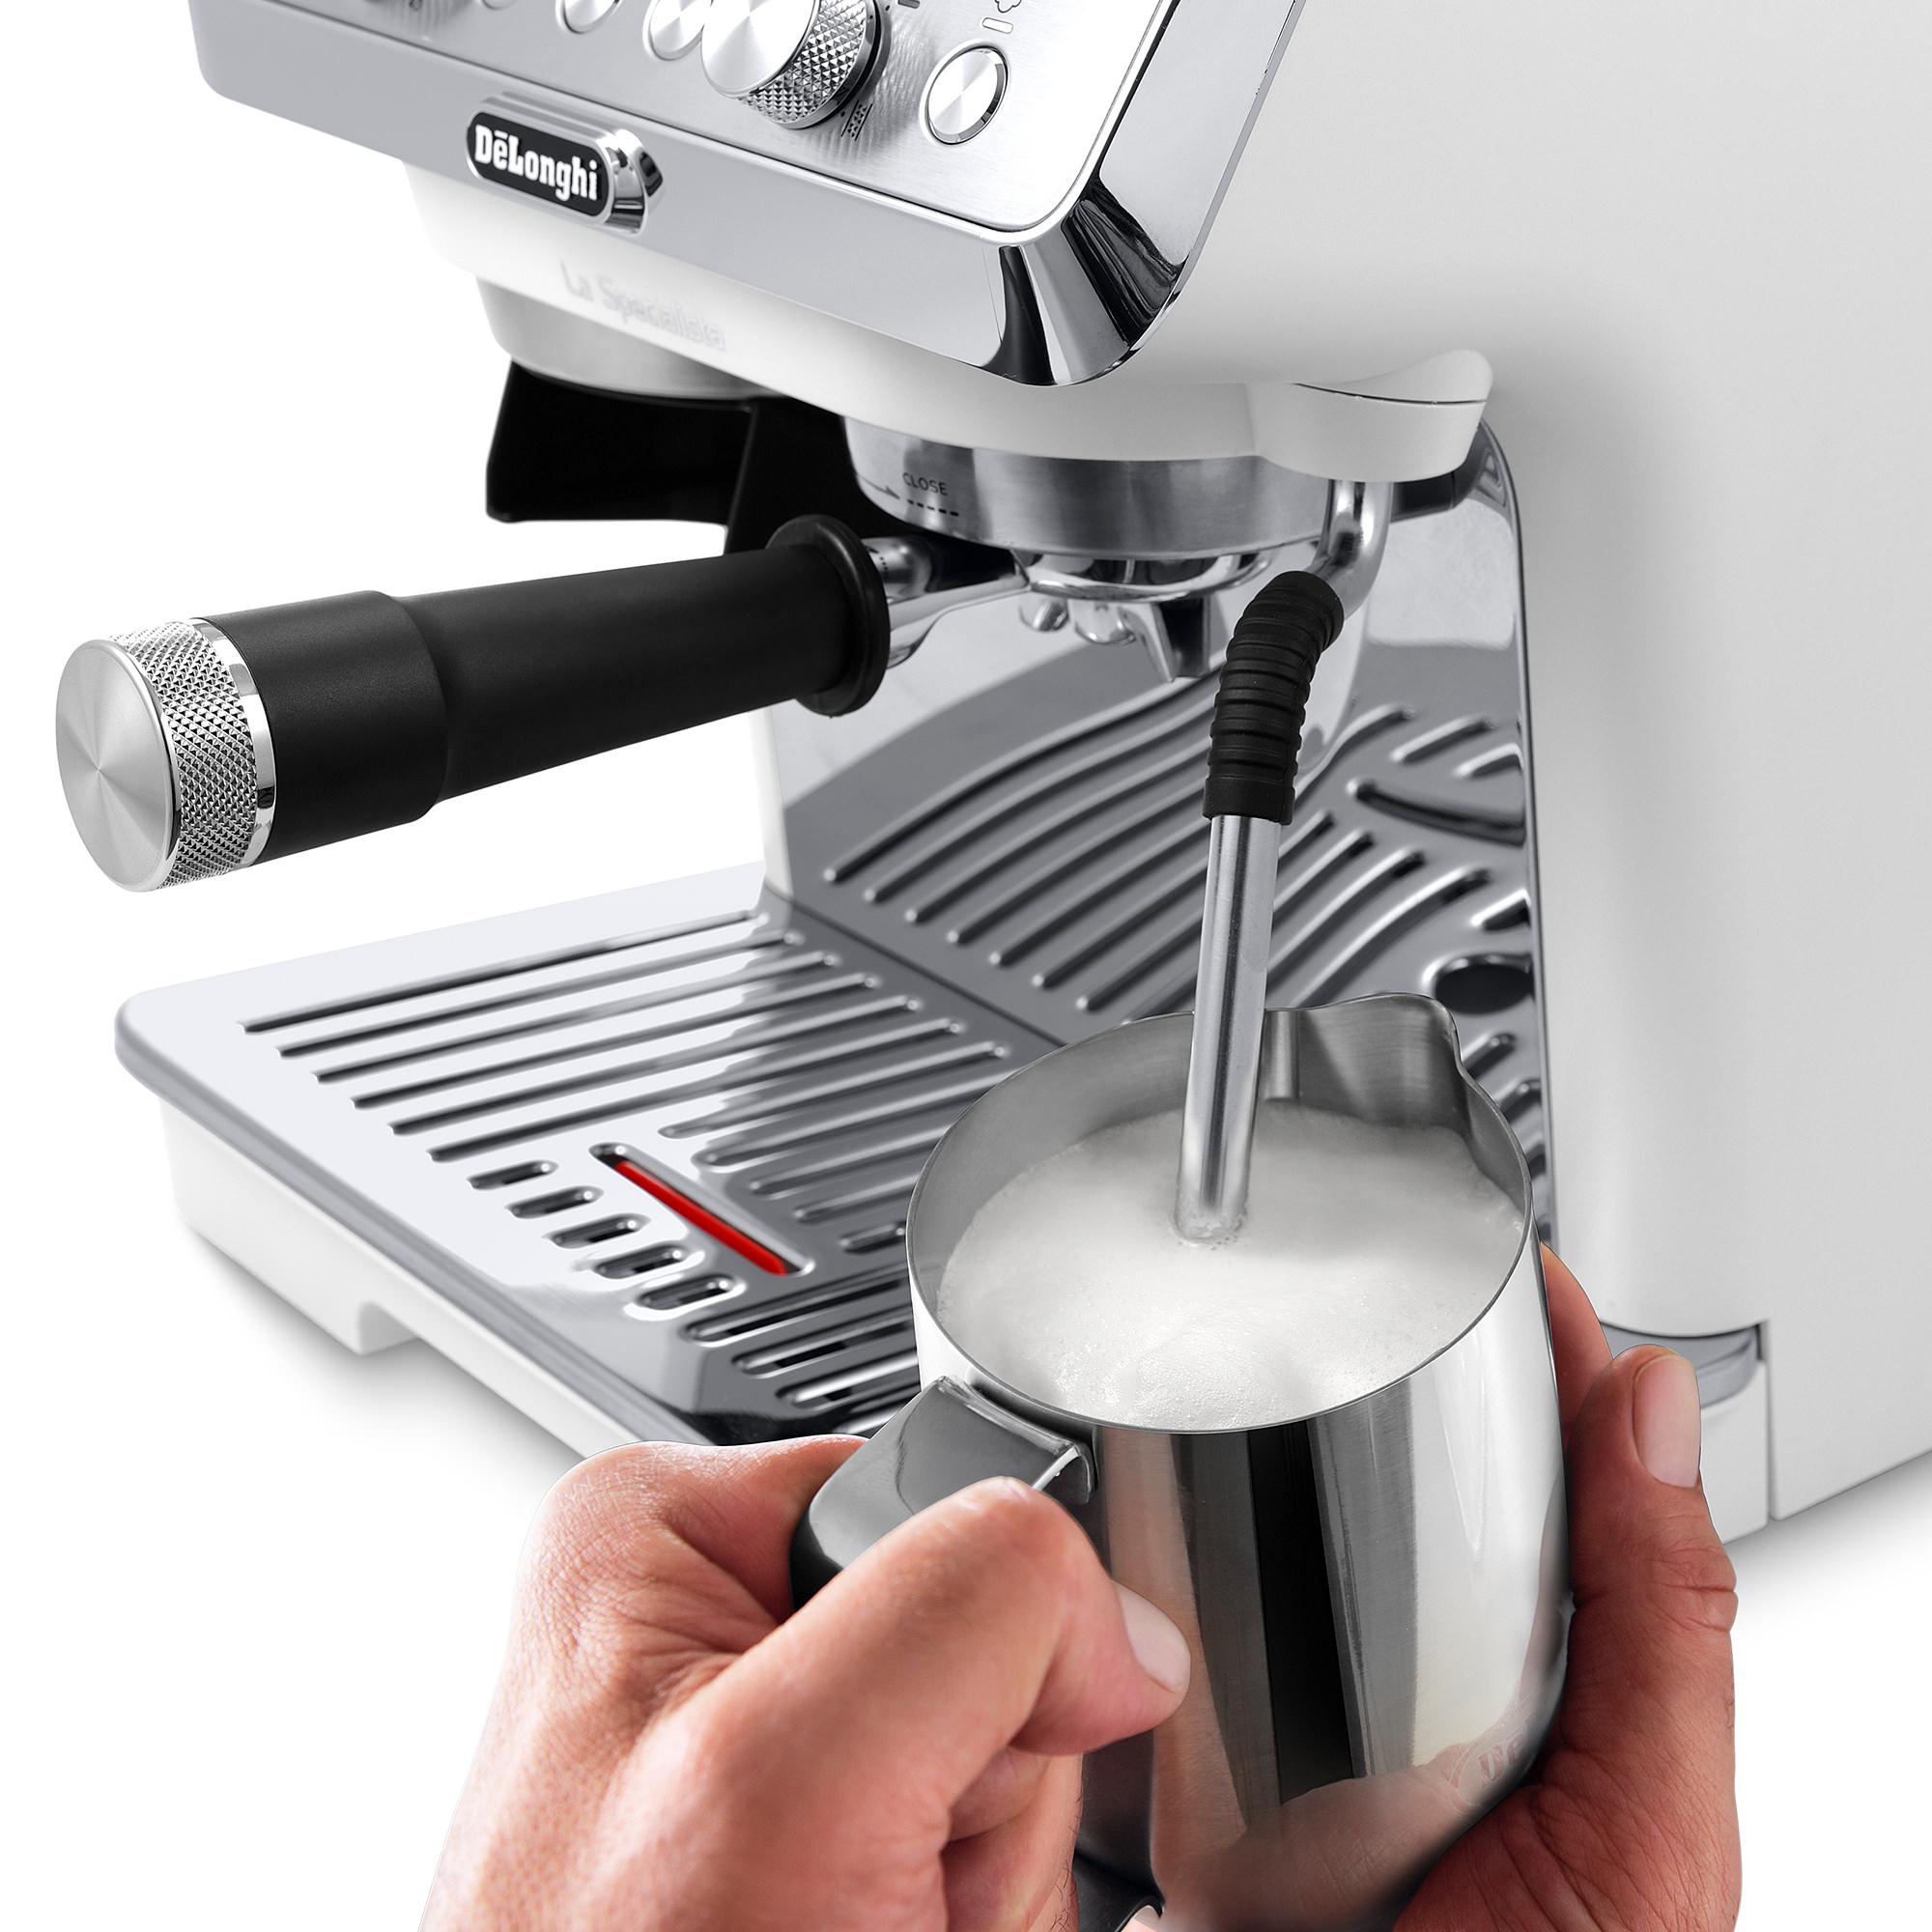 DeLonghi La Specialista Arte EC9155W Espresso Coffee Machine White Image 6